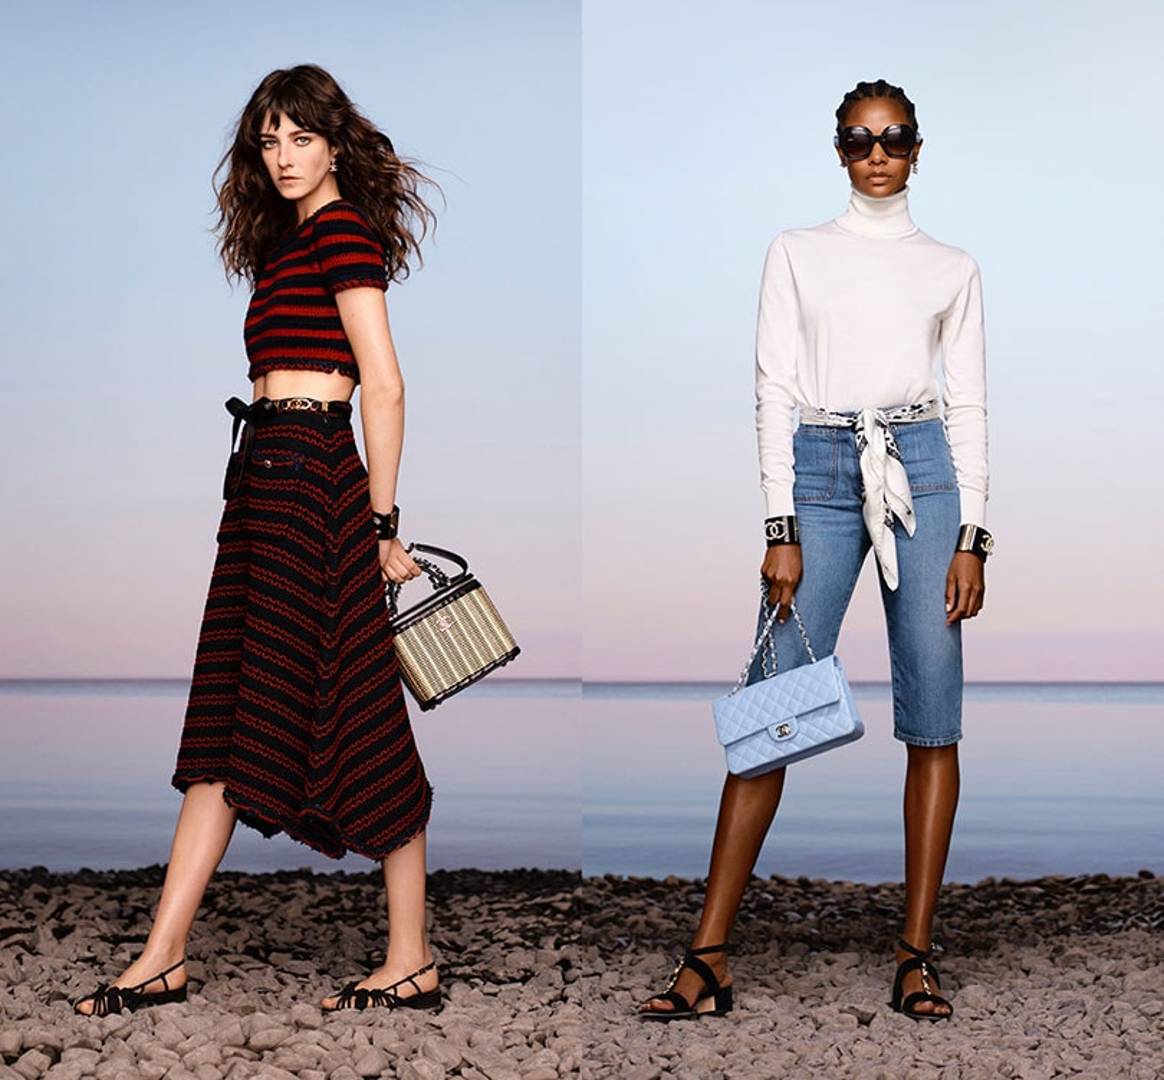 Chanel presenteert cruisecollectie digitaal, maar houdt traditionele modekalender aan